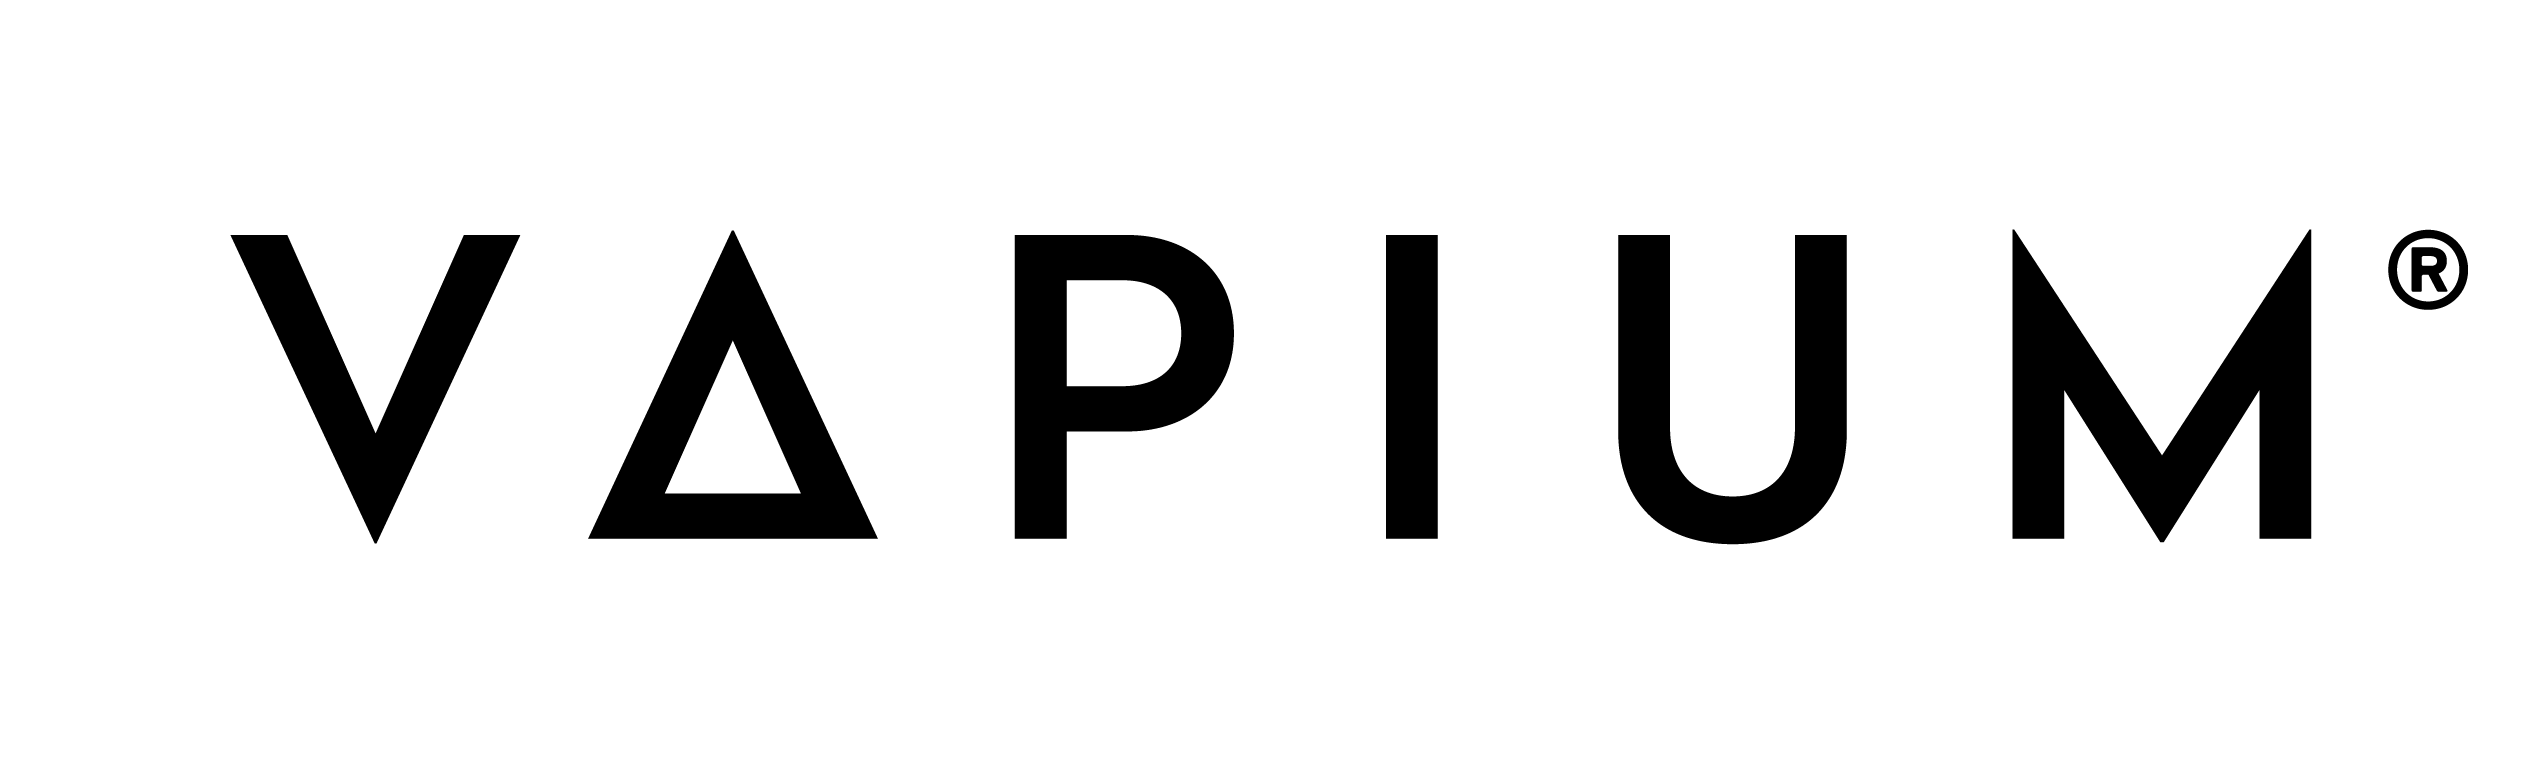 vapium logo brand